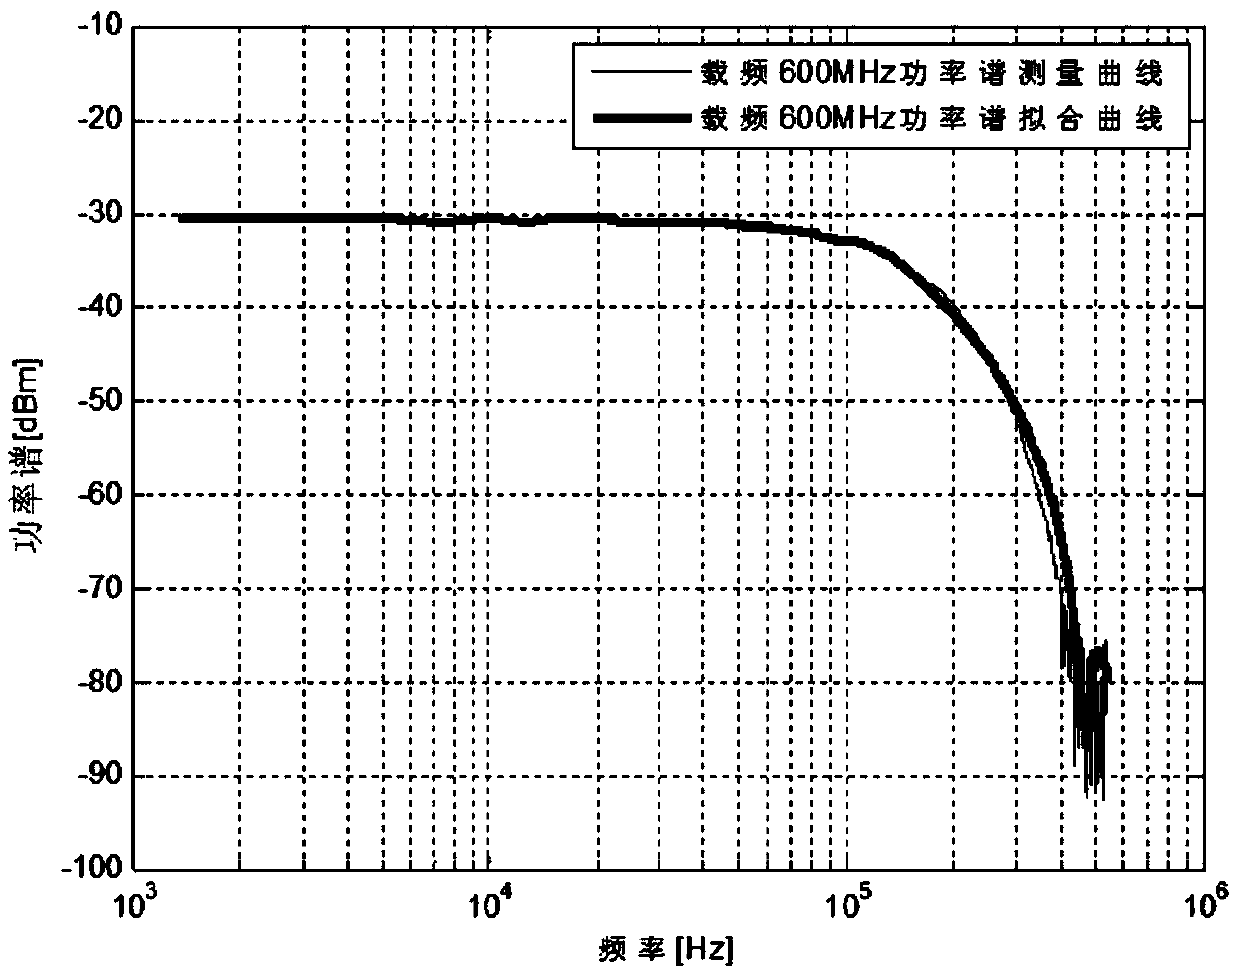 Phase noise measuring method based on phase noise mathematical model